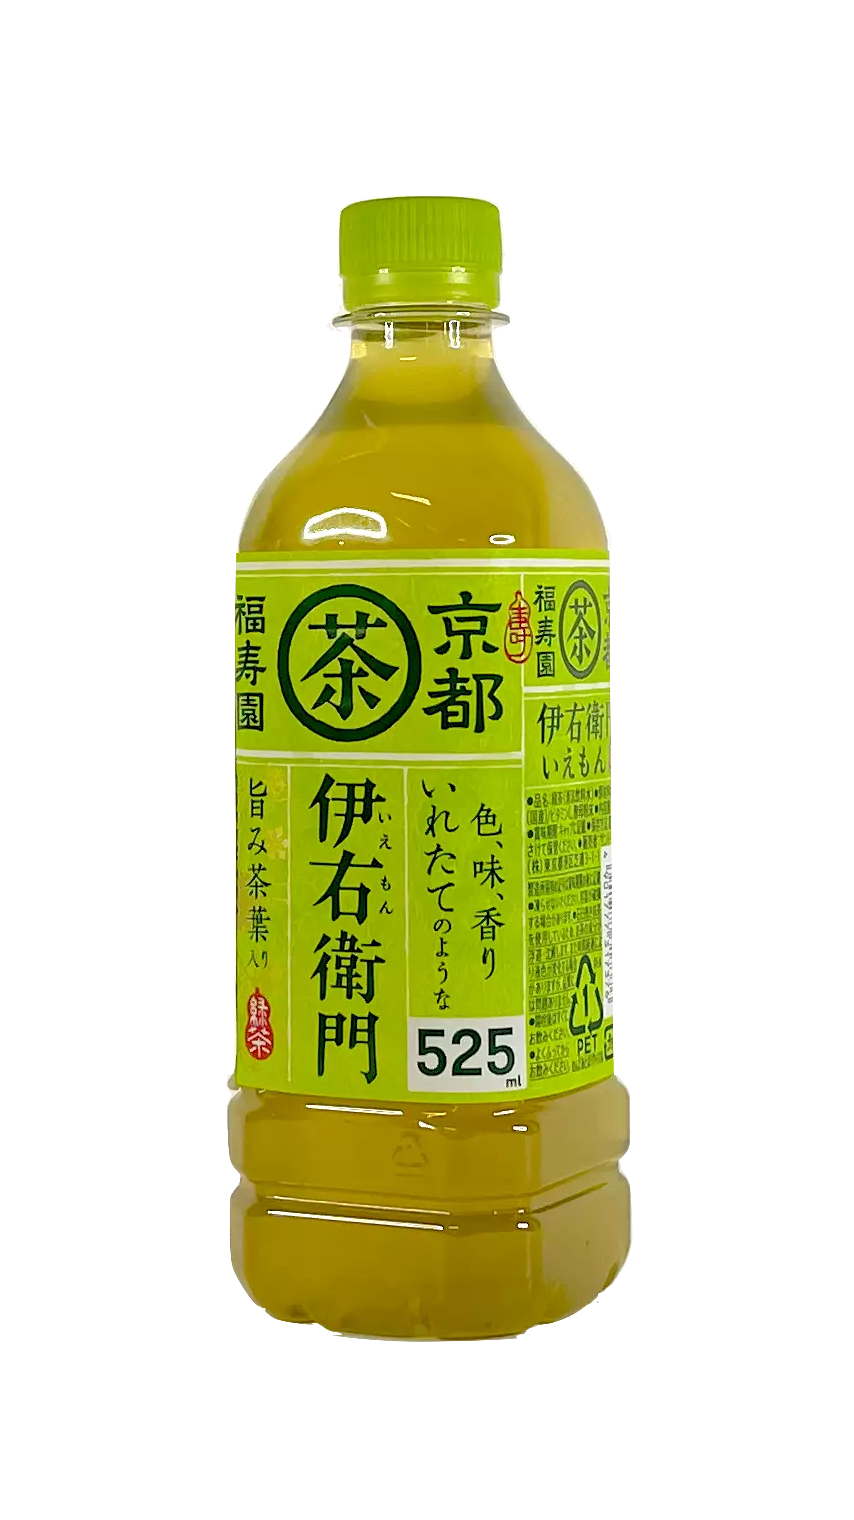 京都茗茶 绿茶风味 525ml Suntory 日本